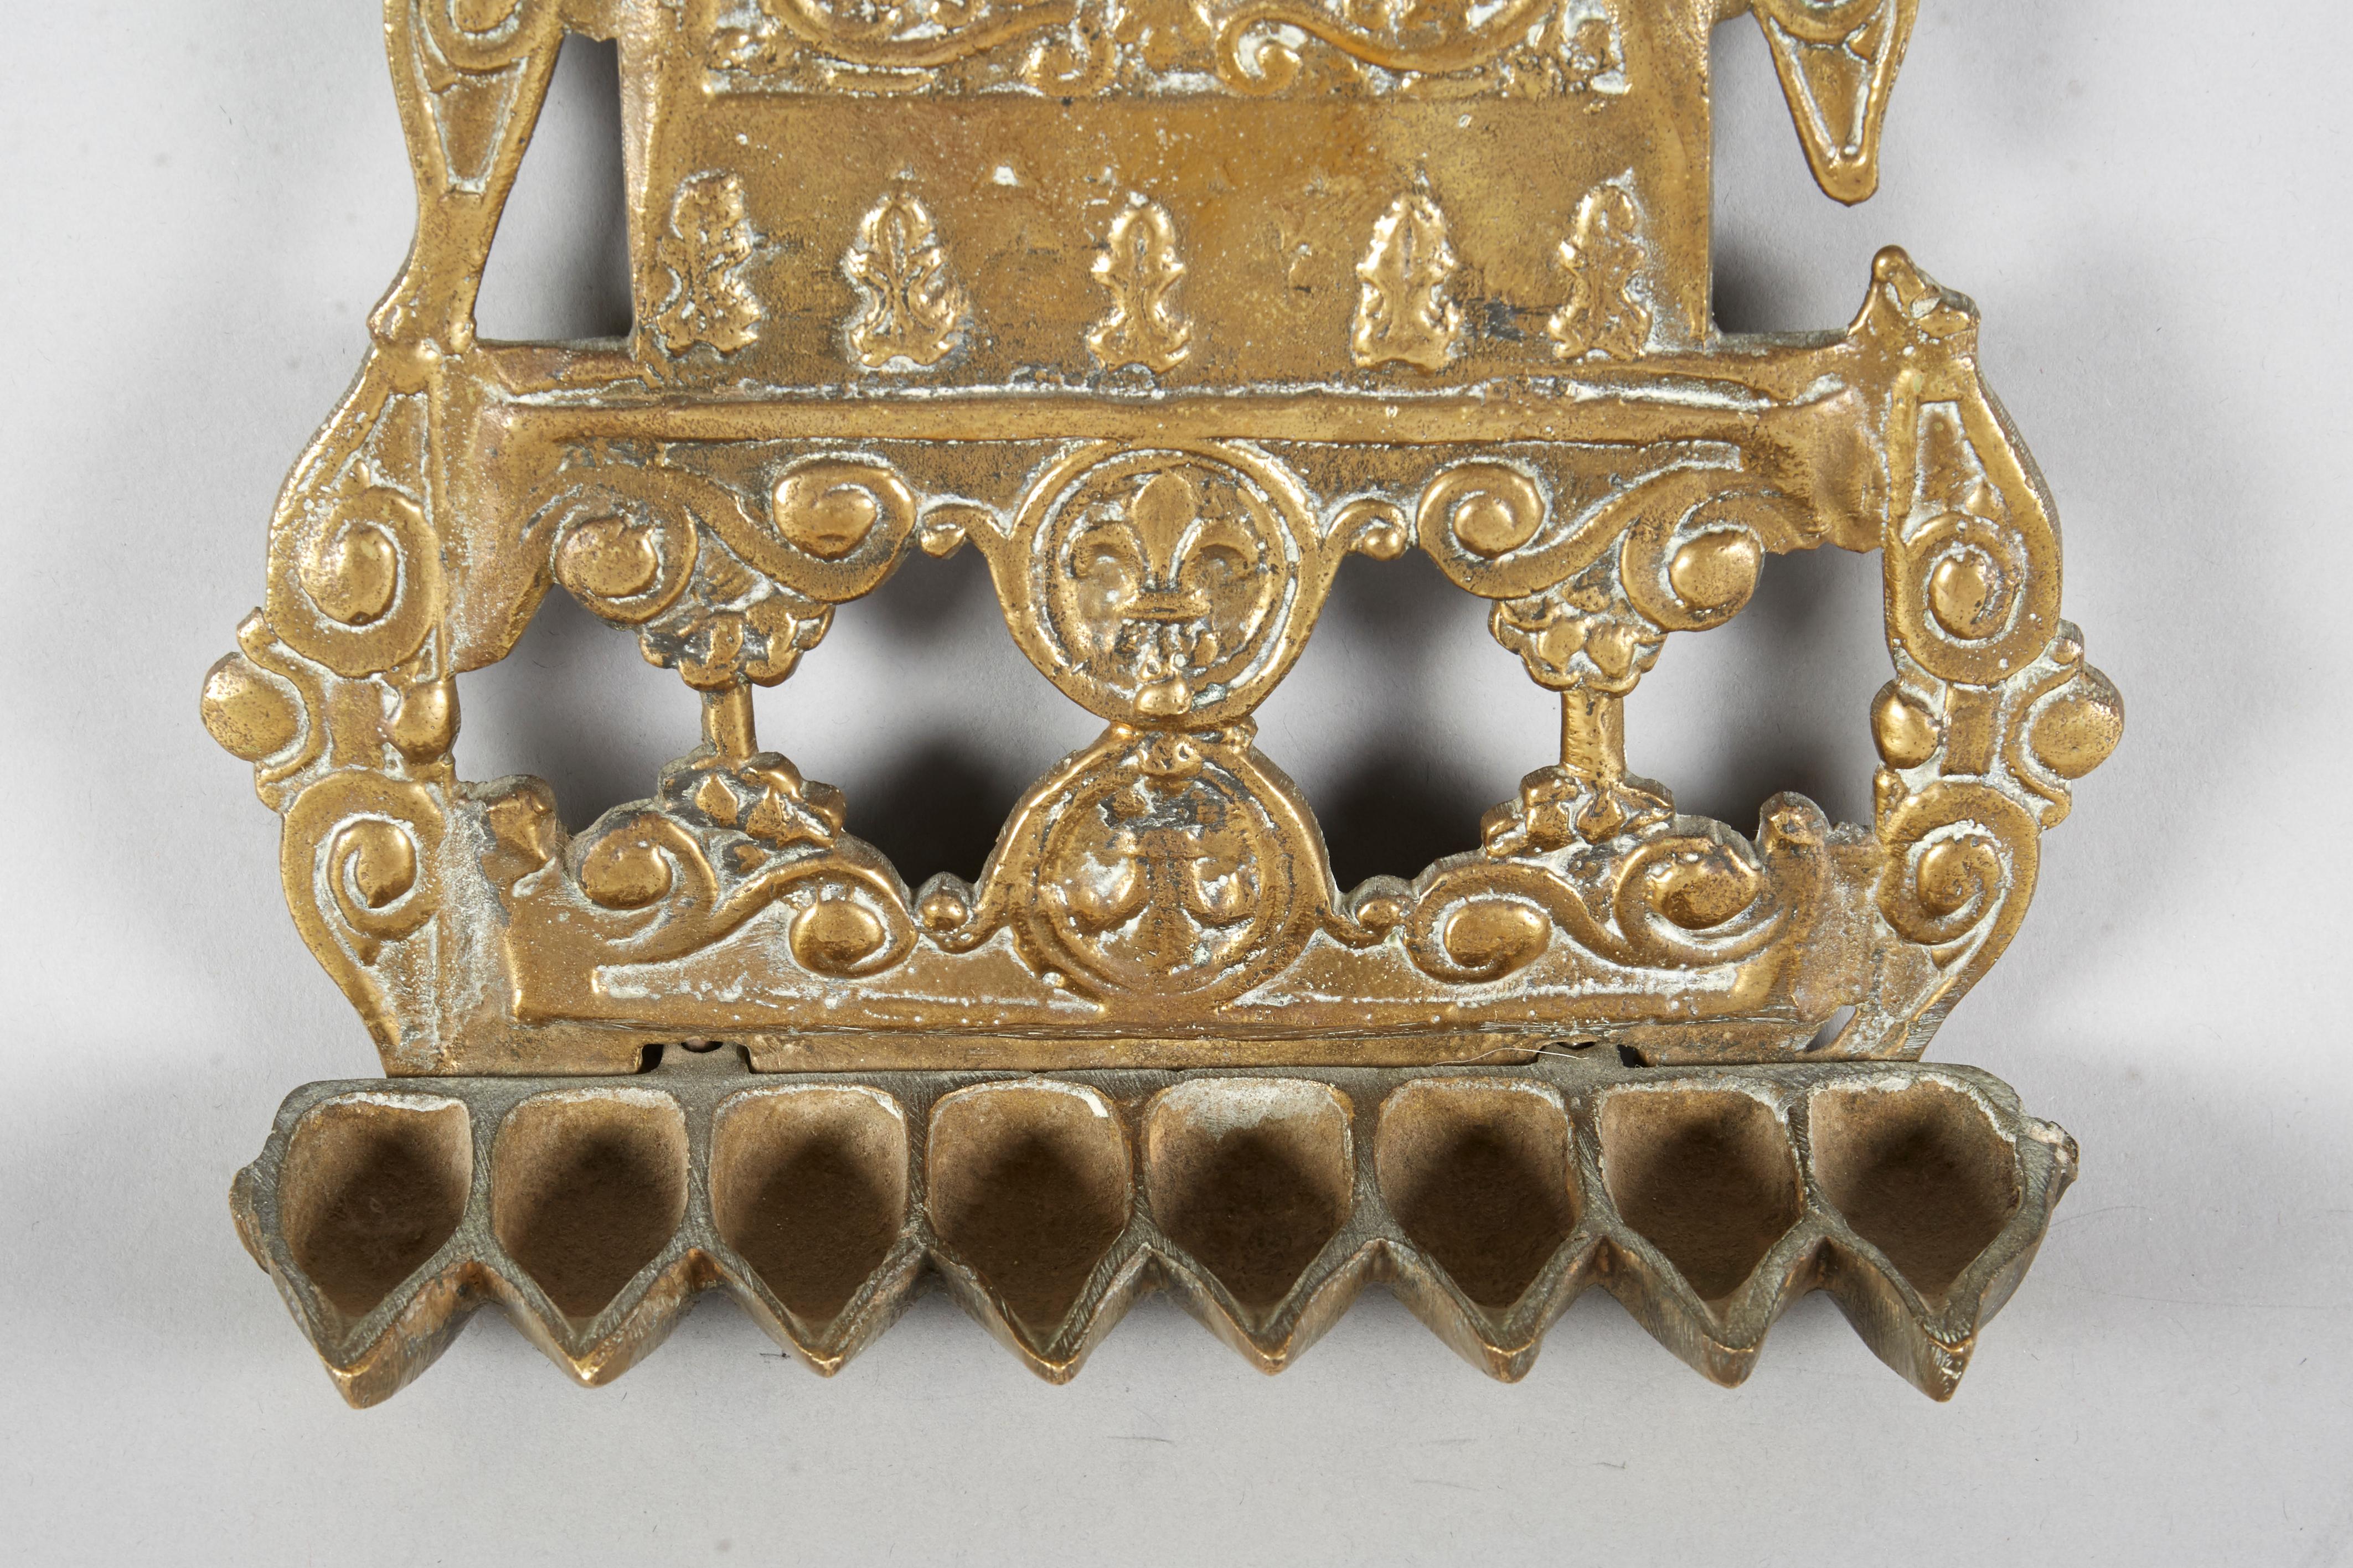 Chanukka-Lampe aus Messingguss, Algerien, Ende 19. oder Anfang 20. Jahrhundert. 
Einzigartiges Design. Die Rückseite ist mit pflanzlichen Motiven und einer Reihe von Medaillons, einem kleinen Schild und einem Rechteck mit Fleur-de-Lis-Dekor